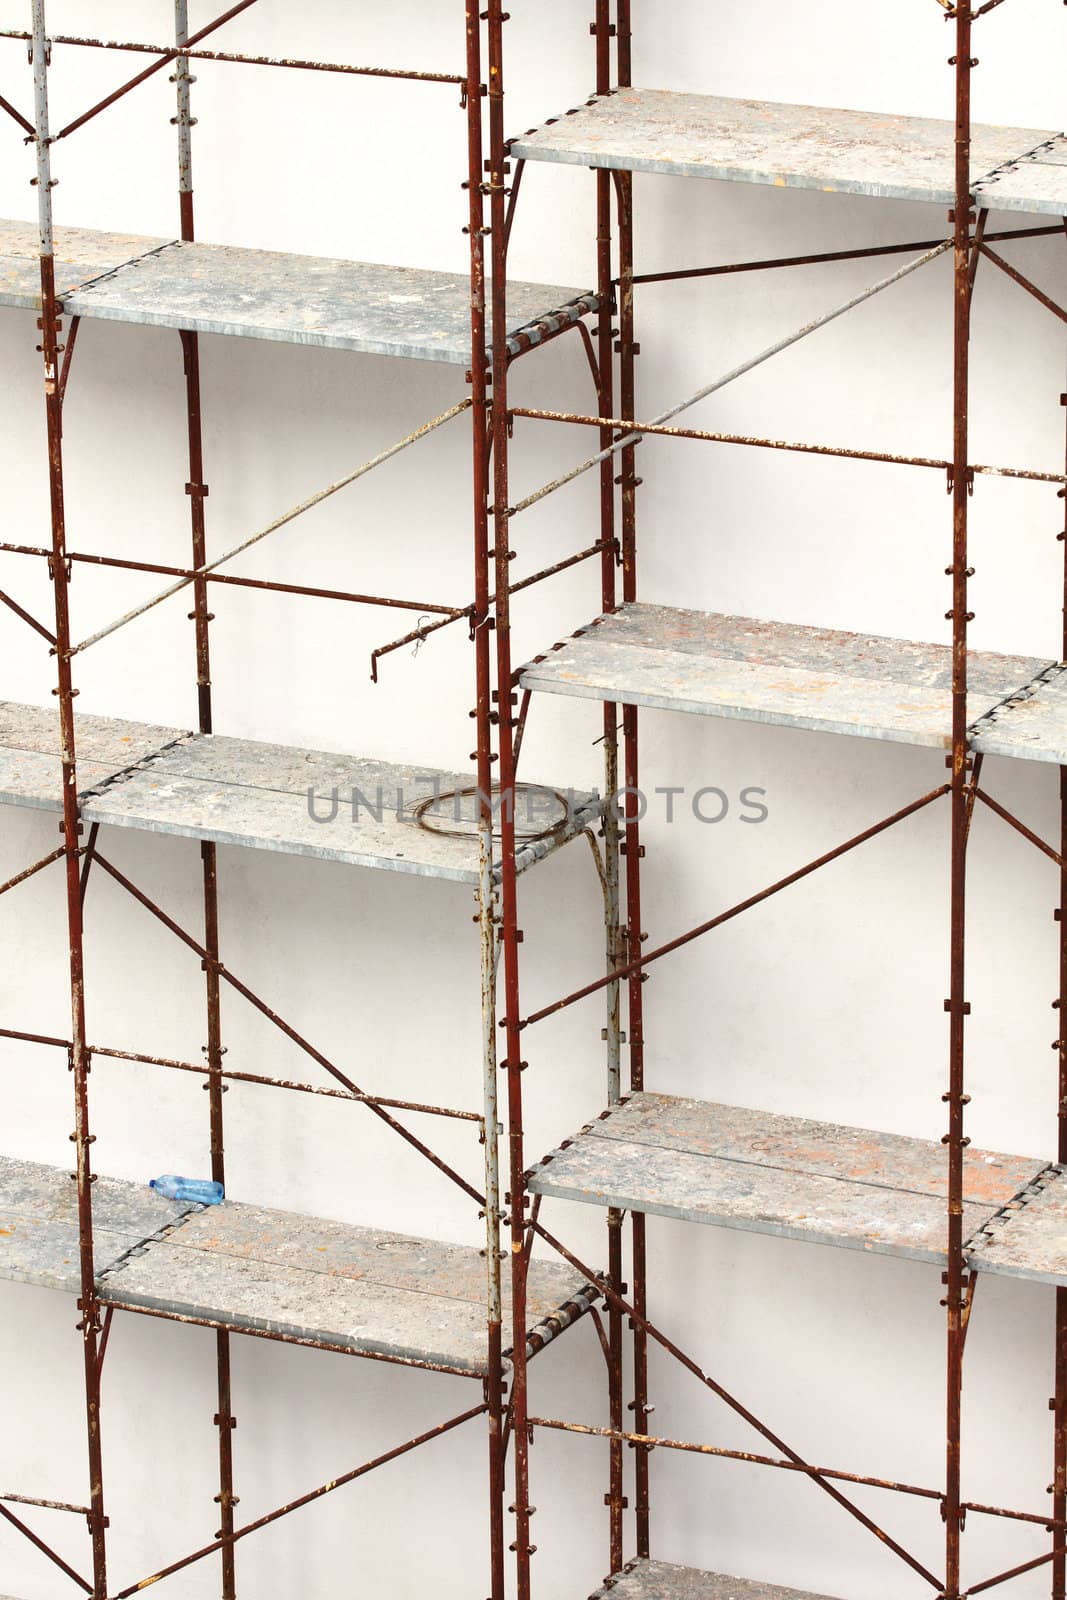 scaffolding by alexkosev